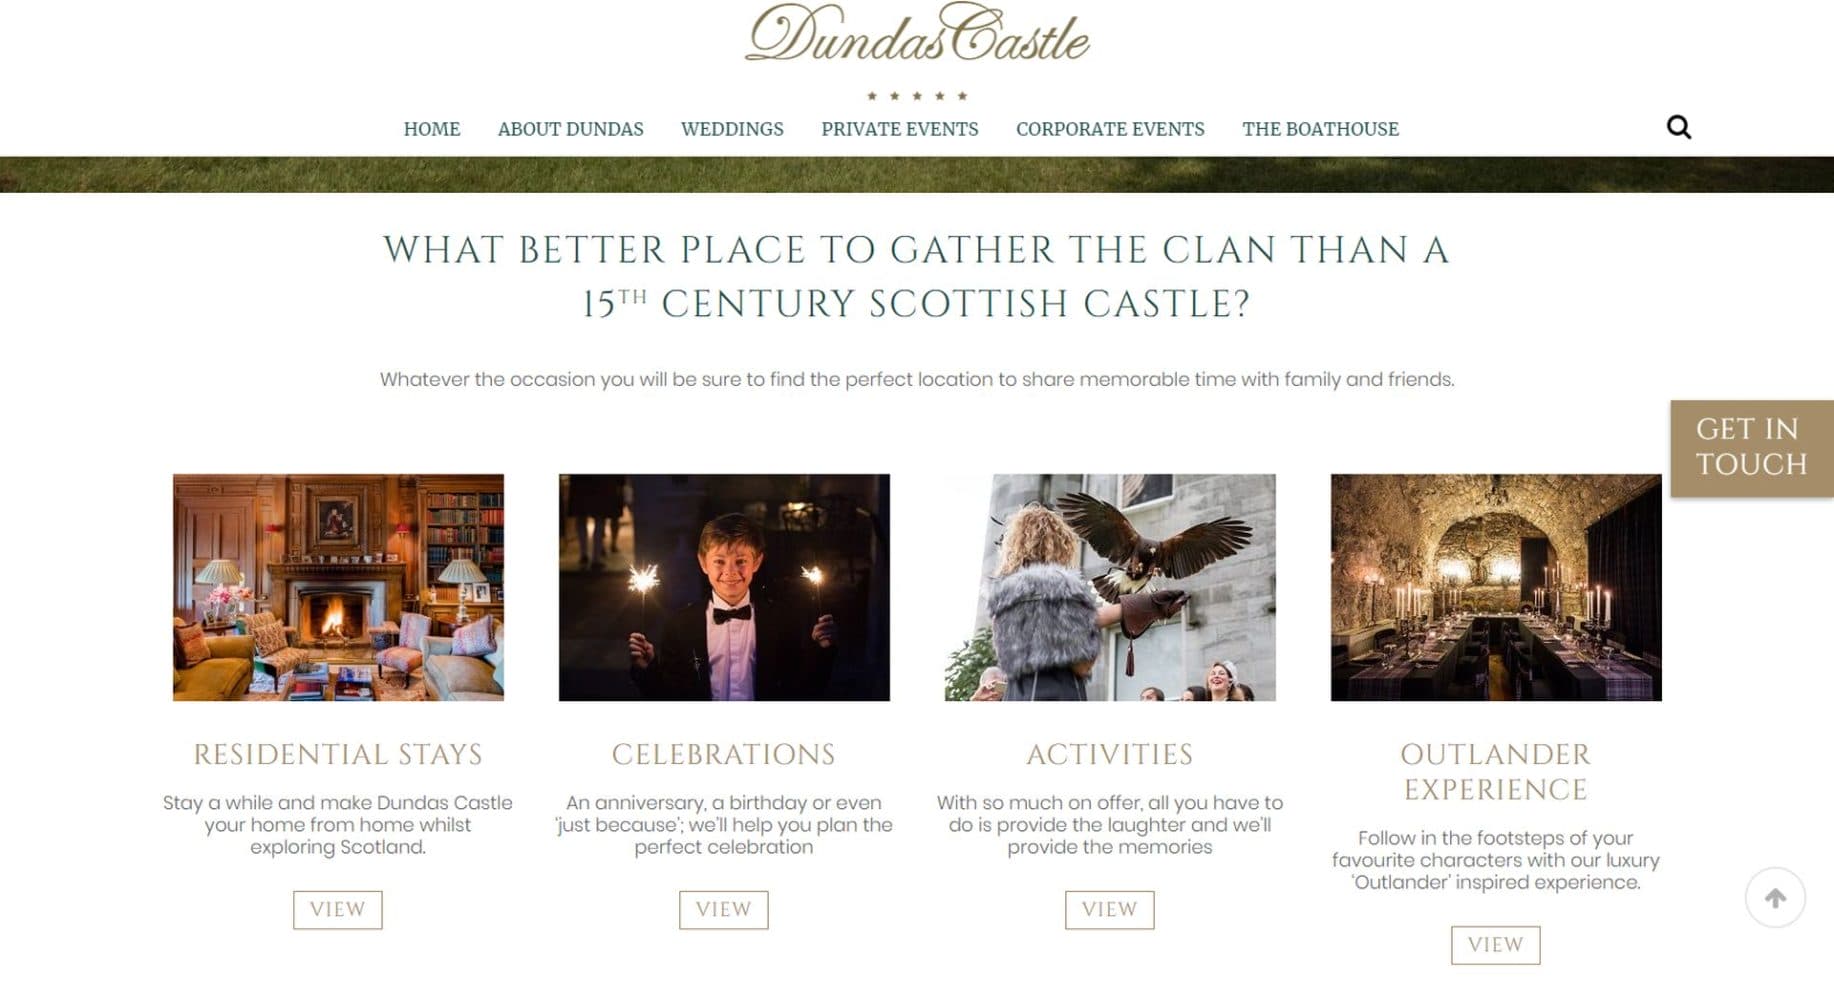 Dundas Castle Website Design Menu